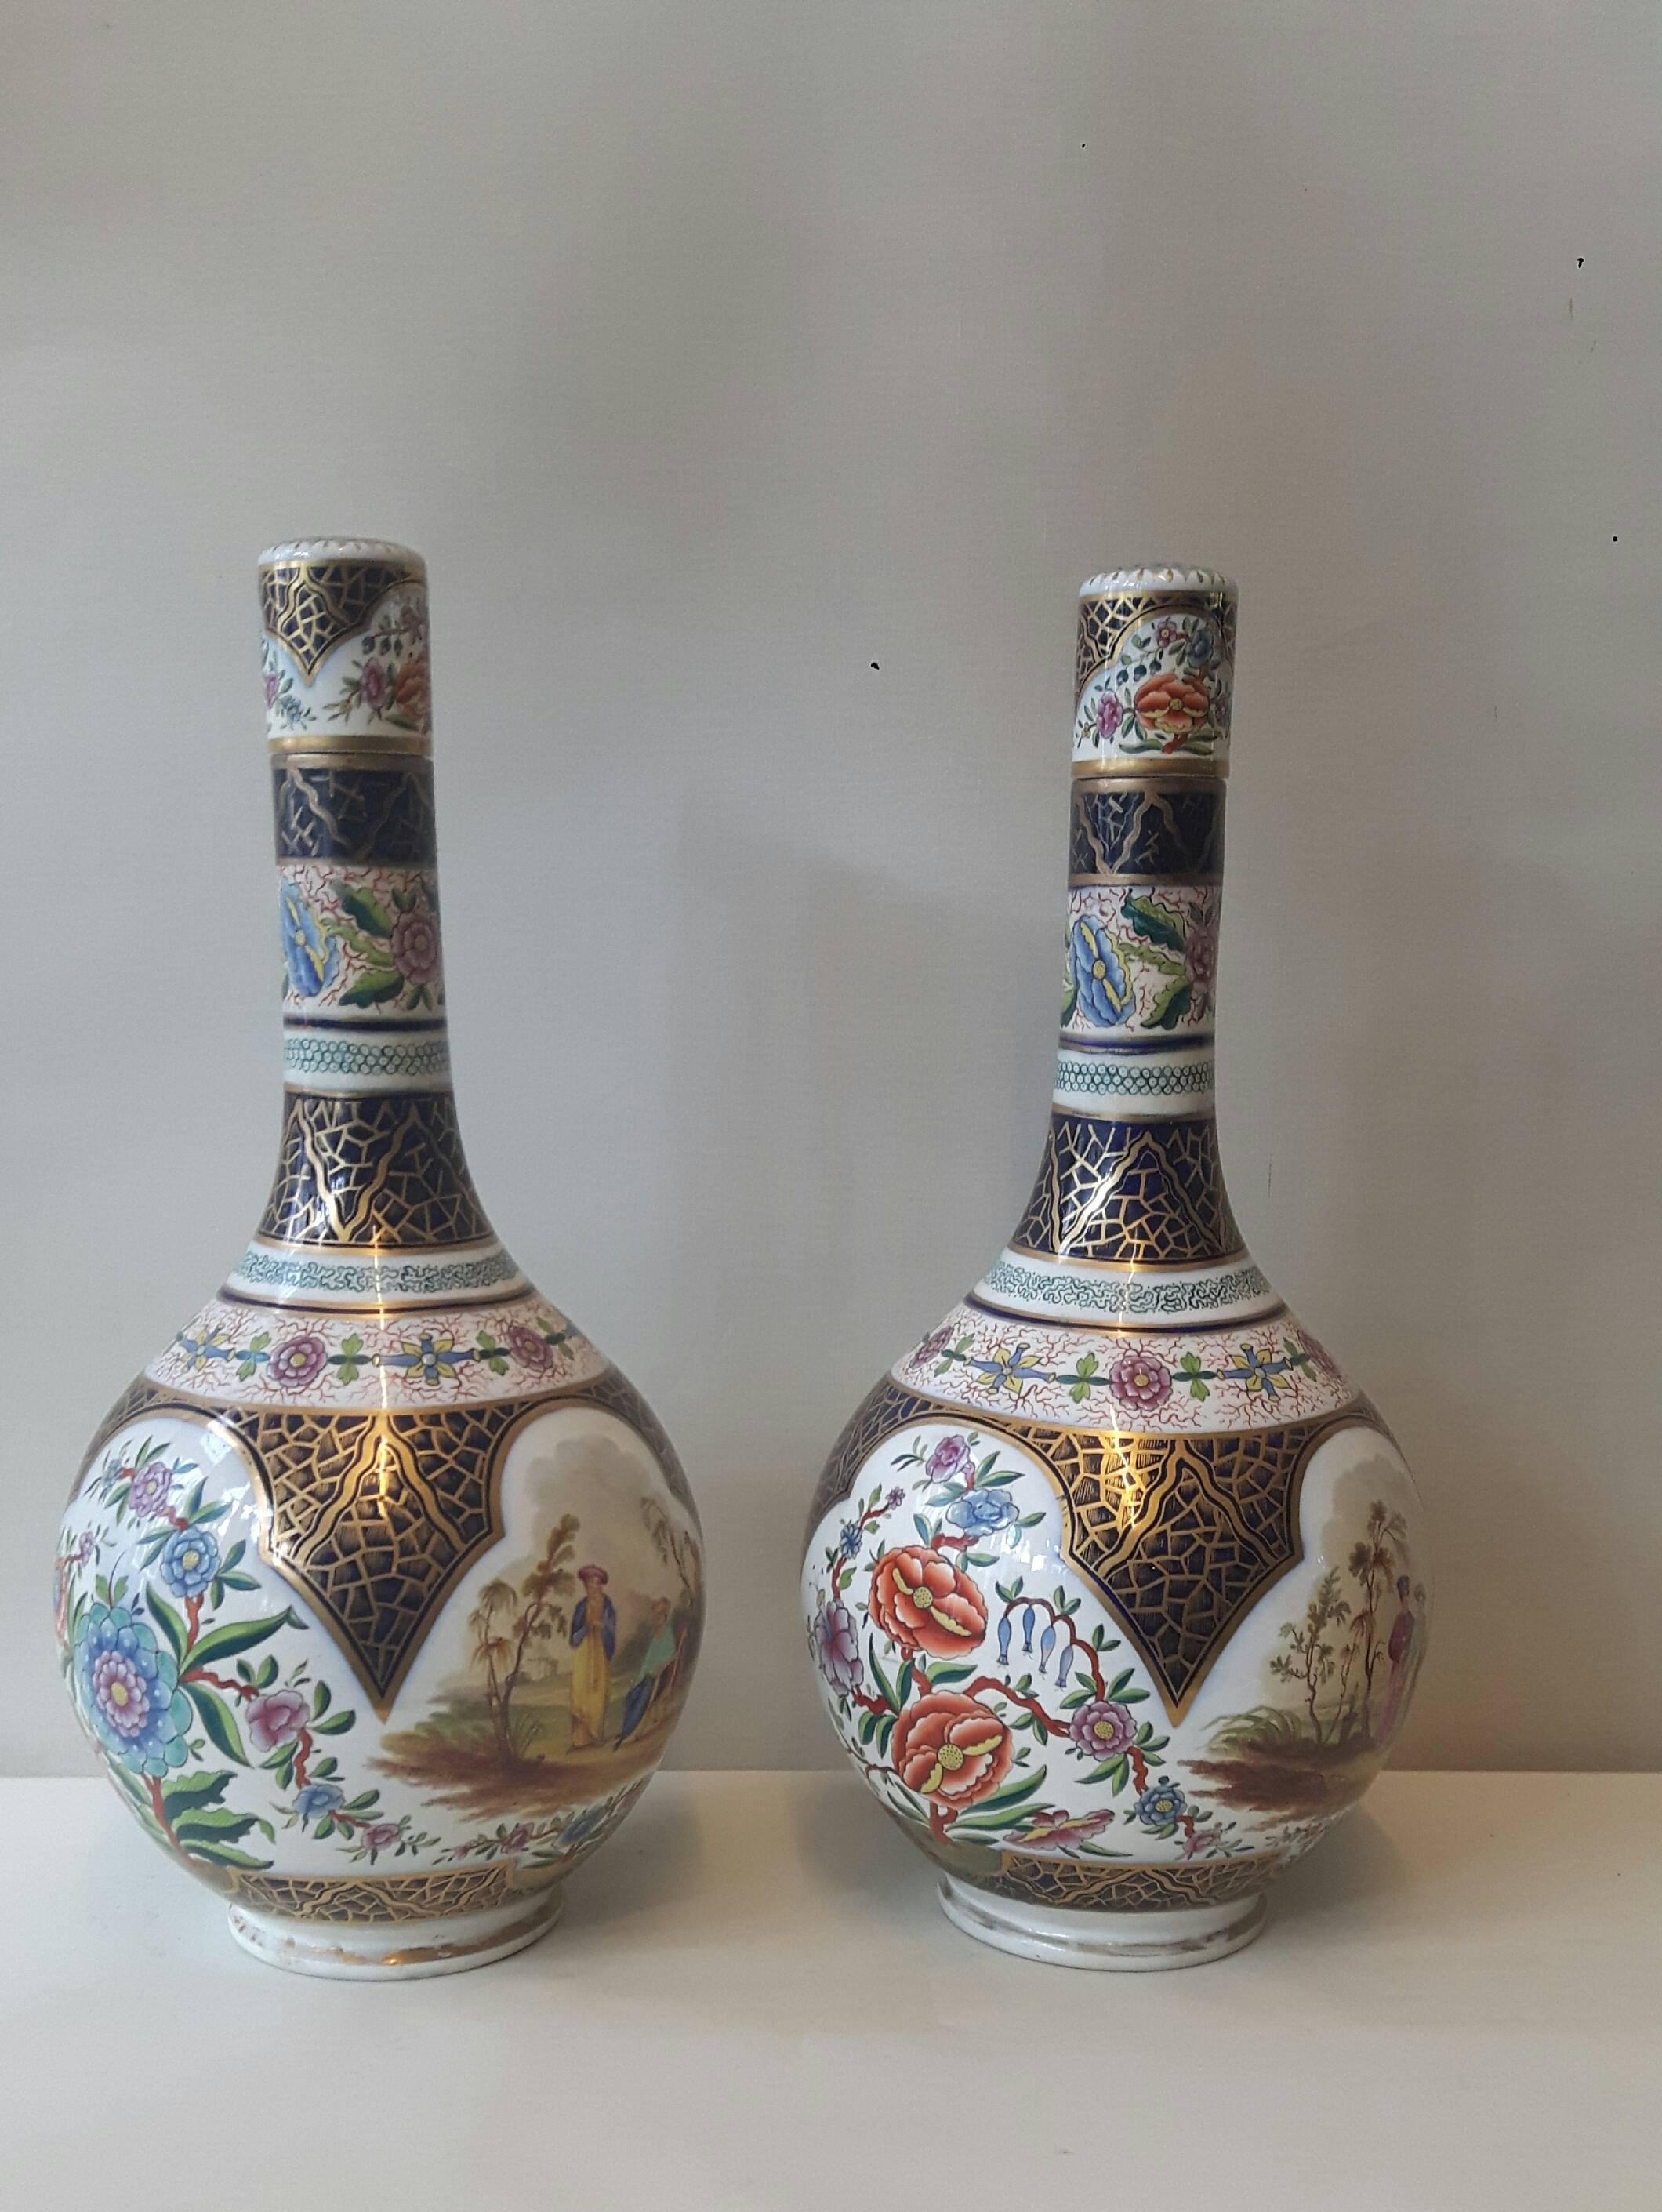 Ein hübsches Paar bauchiger Vasen und Deckel aus kontinentalem Porzellan. Die Mittelteile sind mit Kartuschen mit orientalischen Hof- und Blumenszenen handdekoriert, die Hälse mit Blumengirlanden geschmückt, alles auf einem stark blau bemalten und